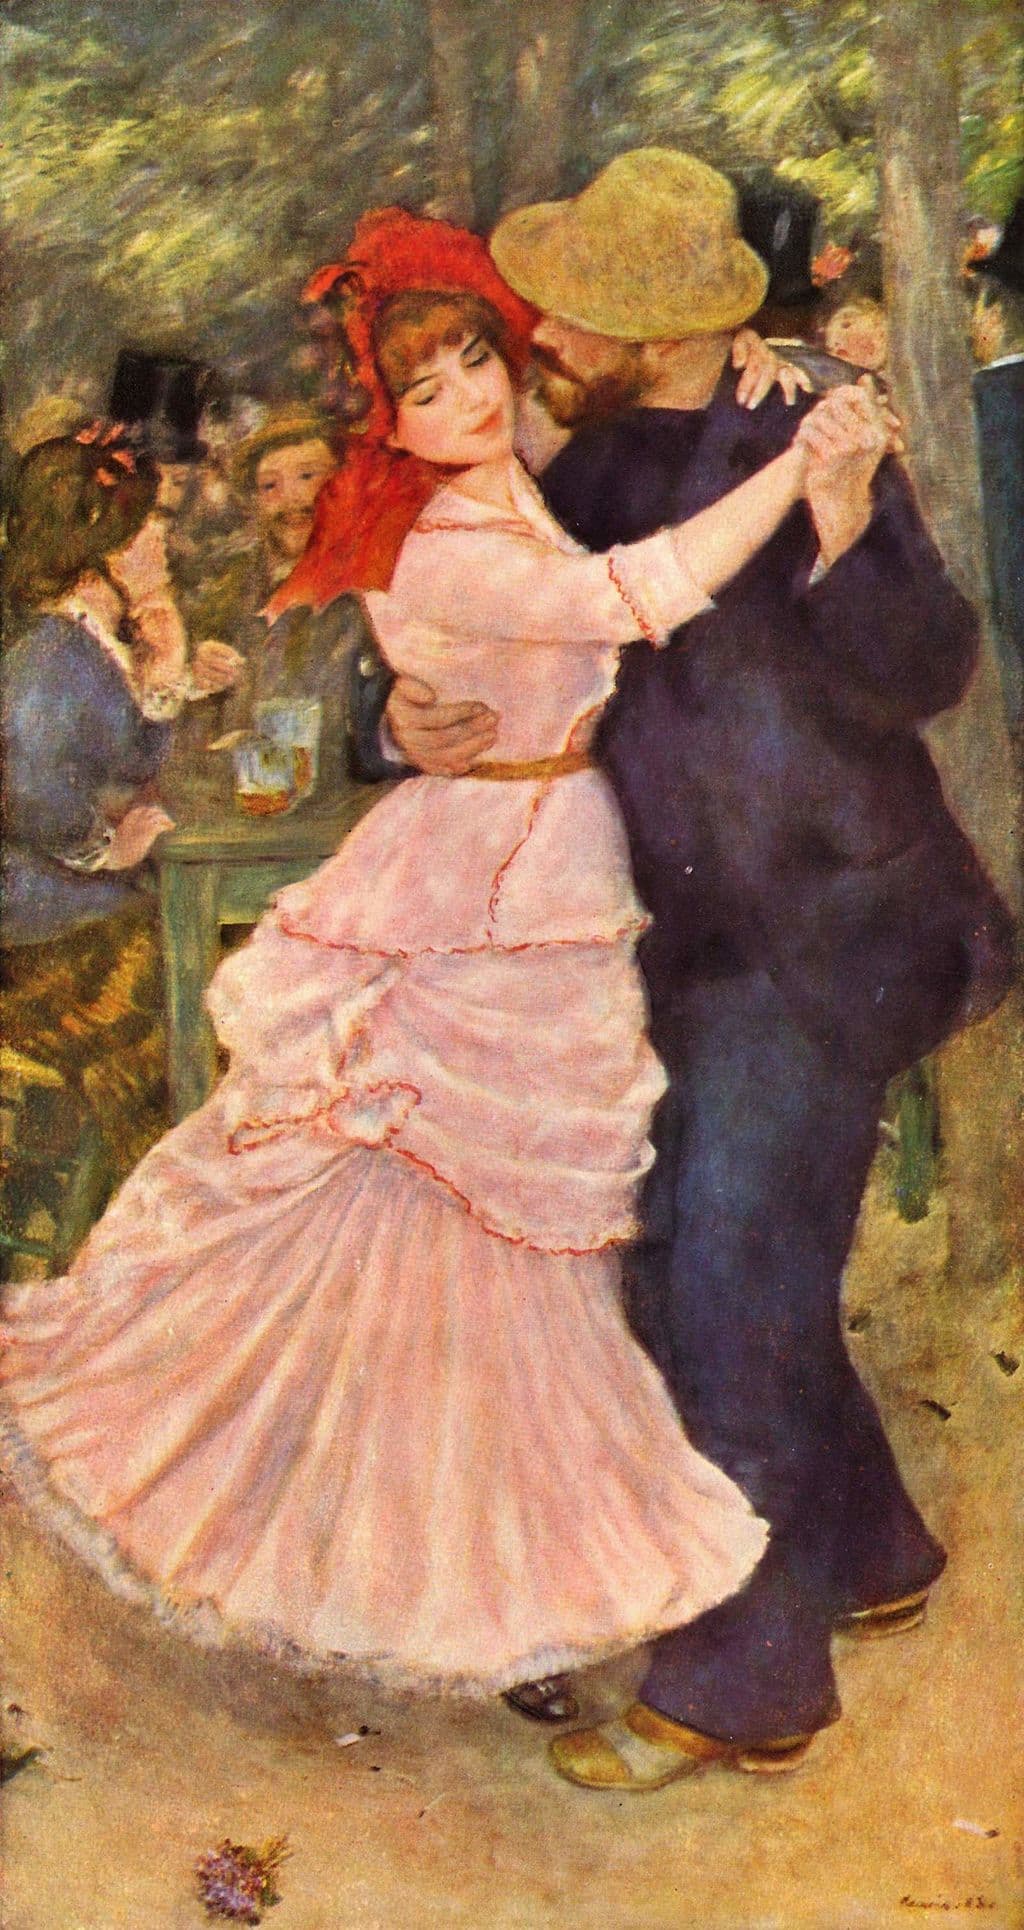 Renoir: Dance at Bougival, 1883 (Boston Museum of Fine Arts)